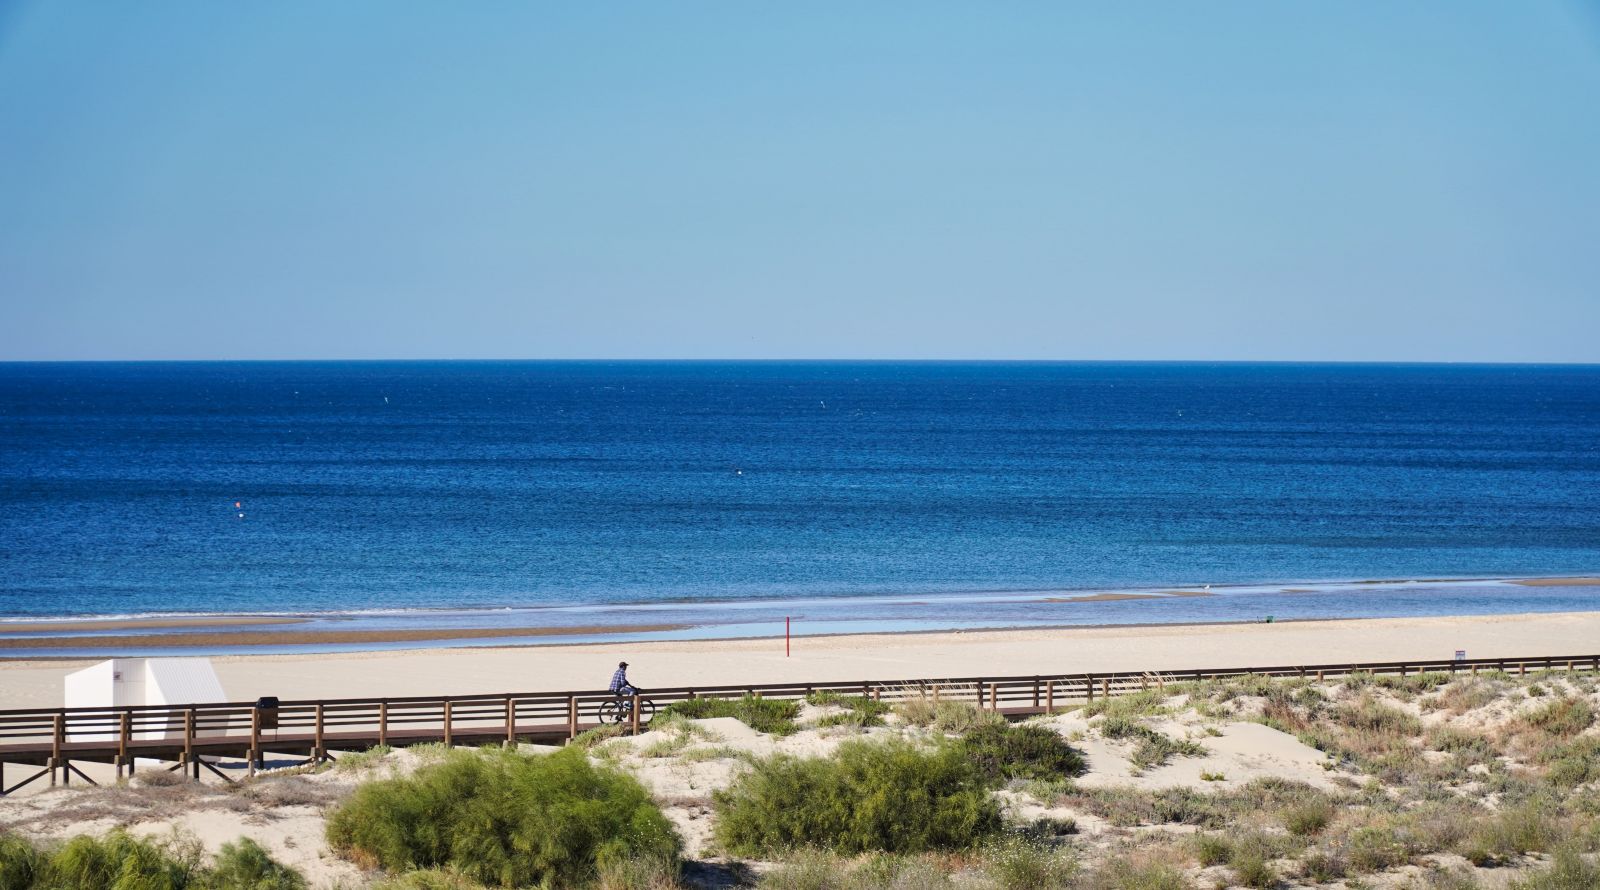 Monte Gordo beach in Portugal.